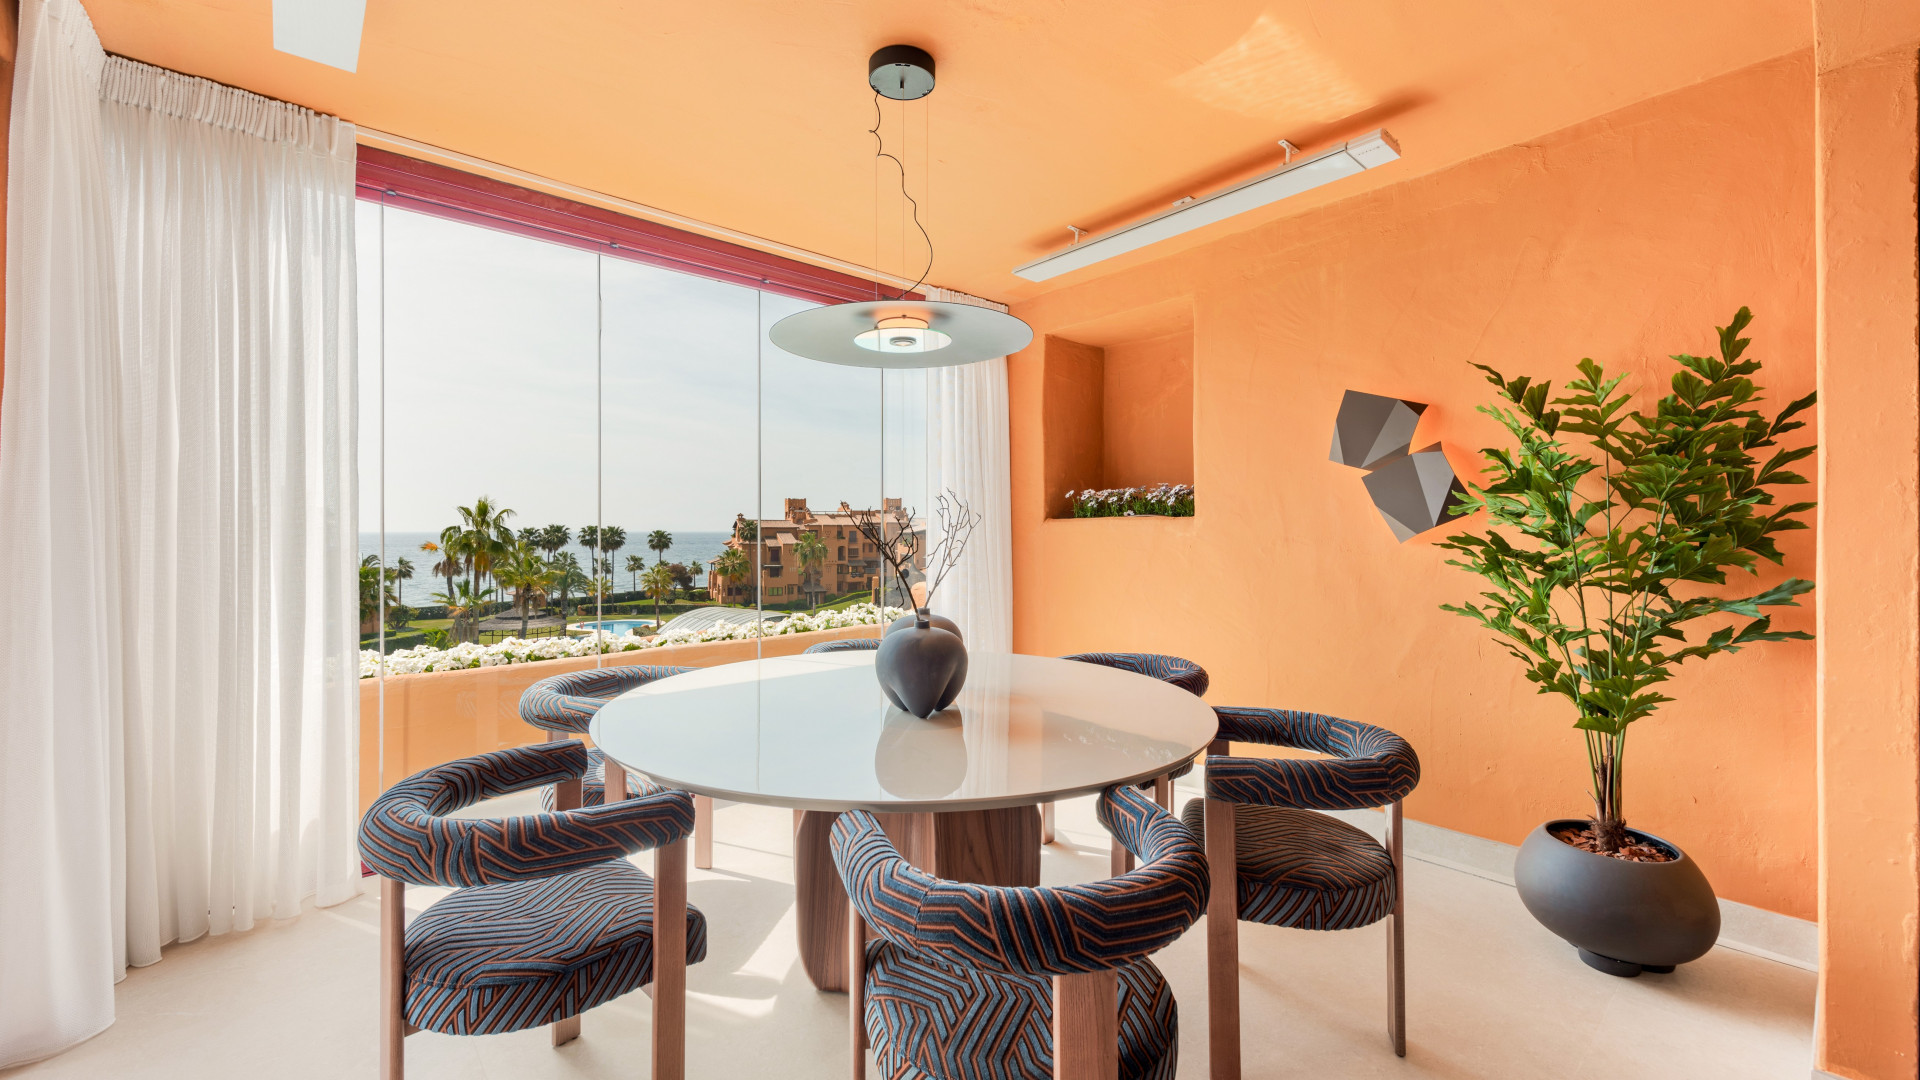 Apartamento de 3 dormitorios completamente reformado con impresionantes vistas abiertas al mar y jardines en un exclusivo complejo frente a la playa